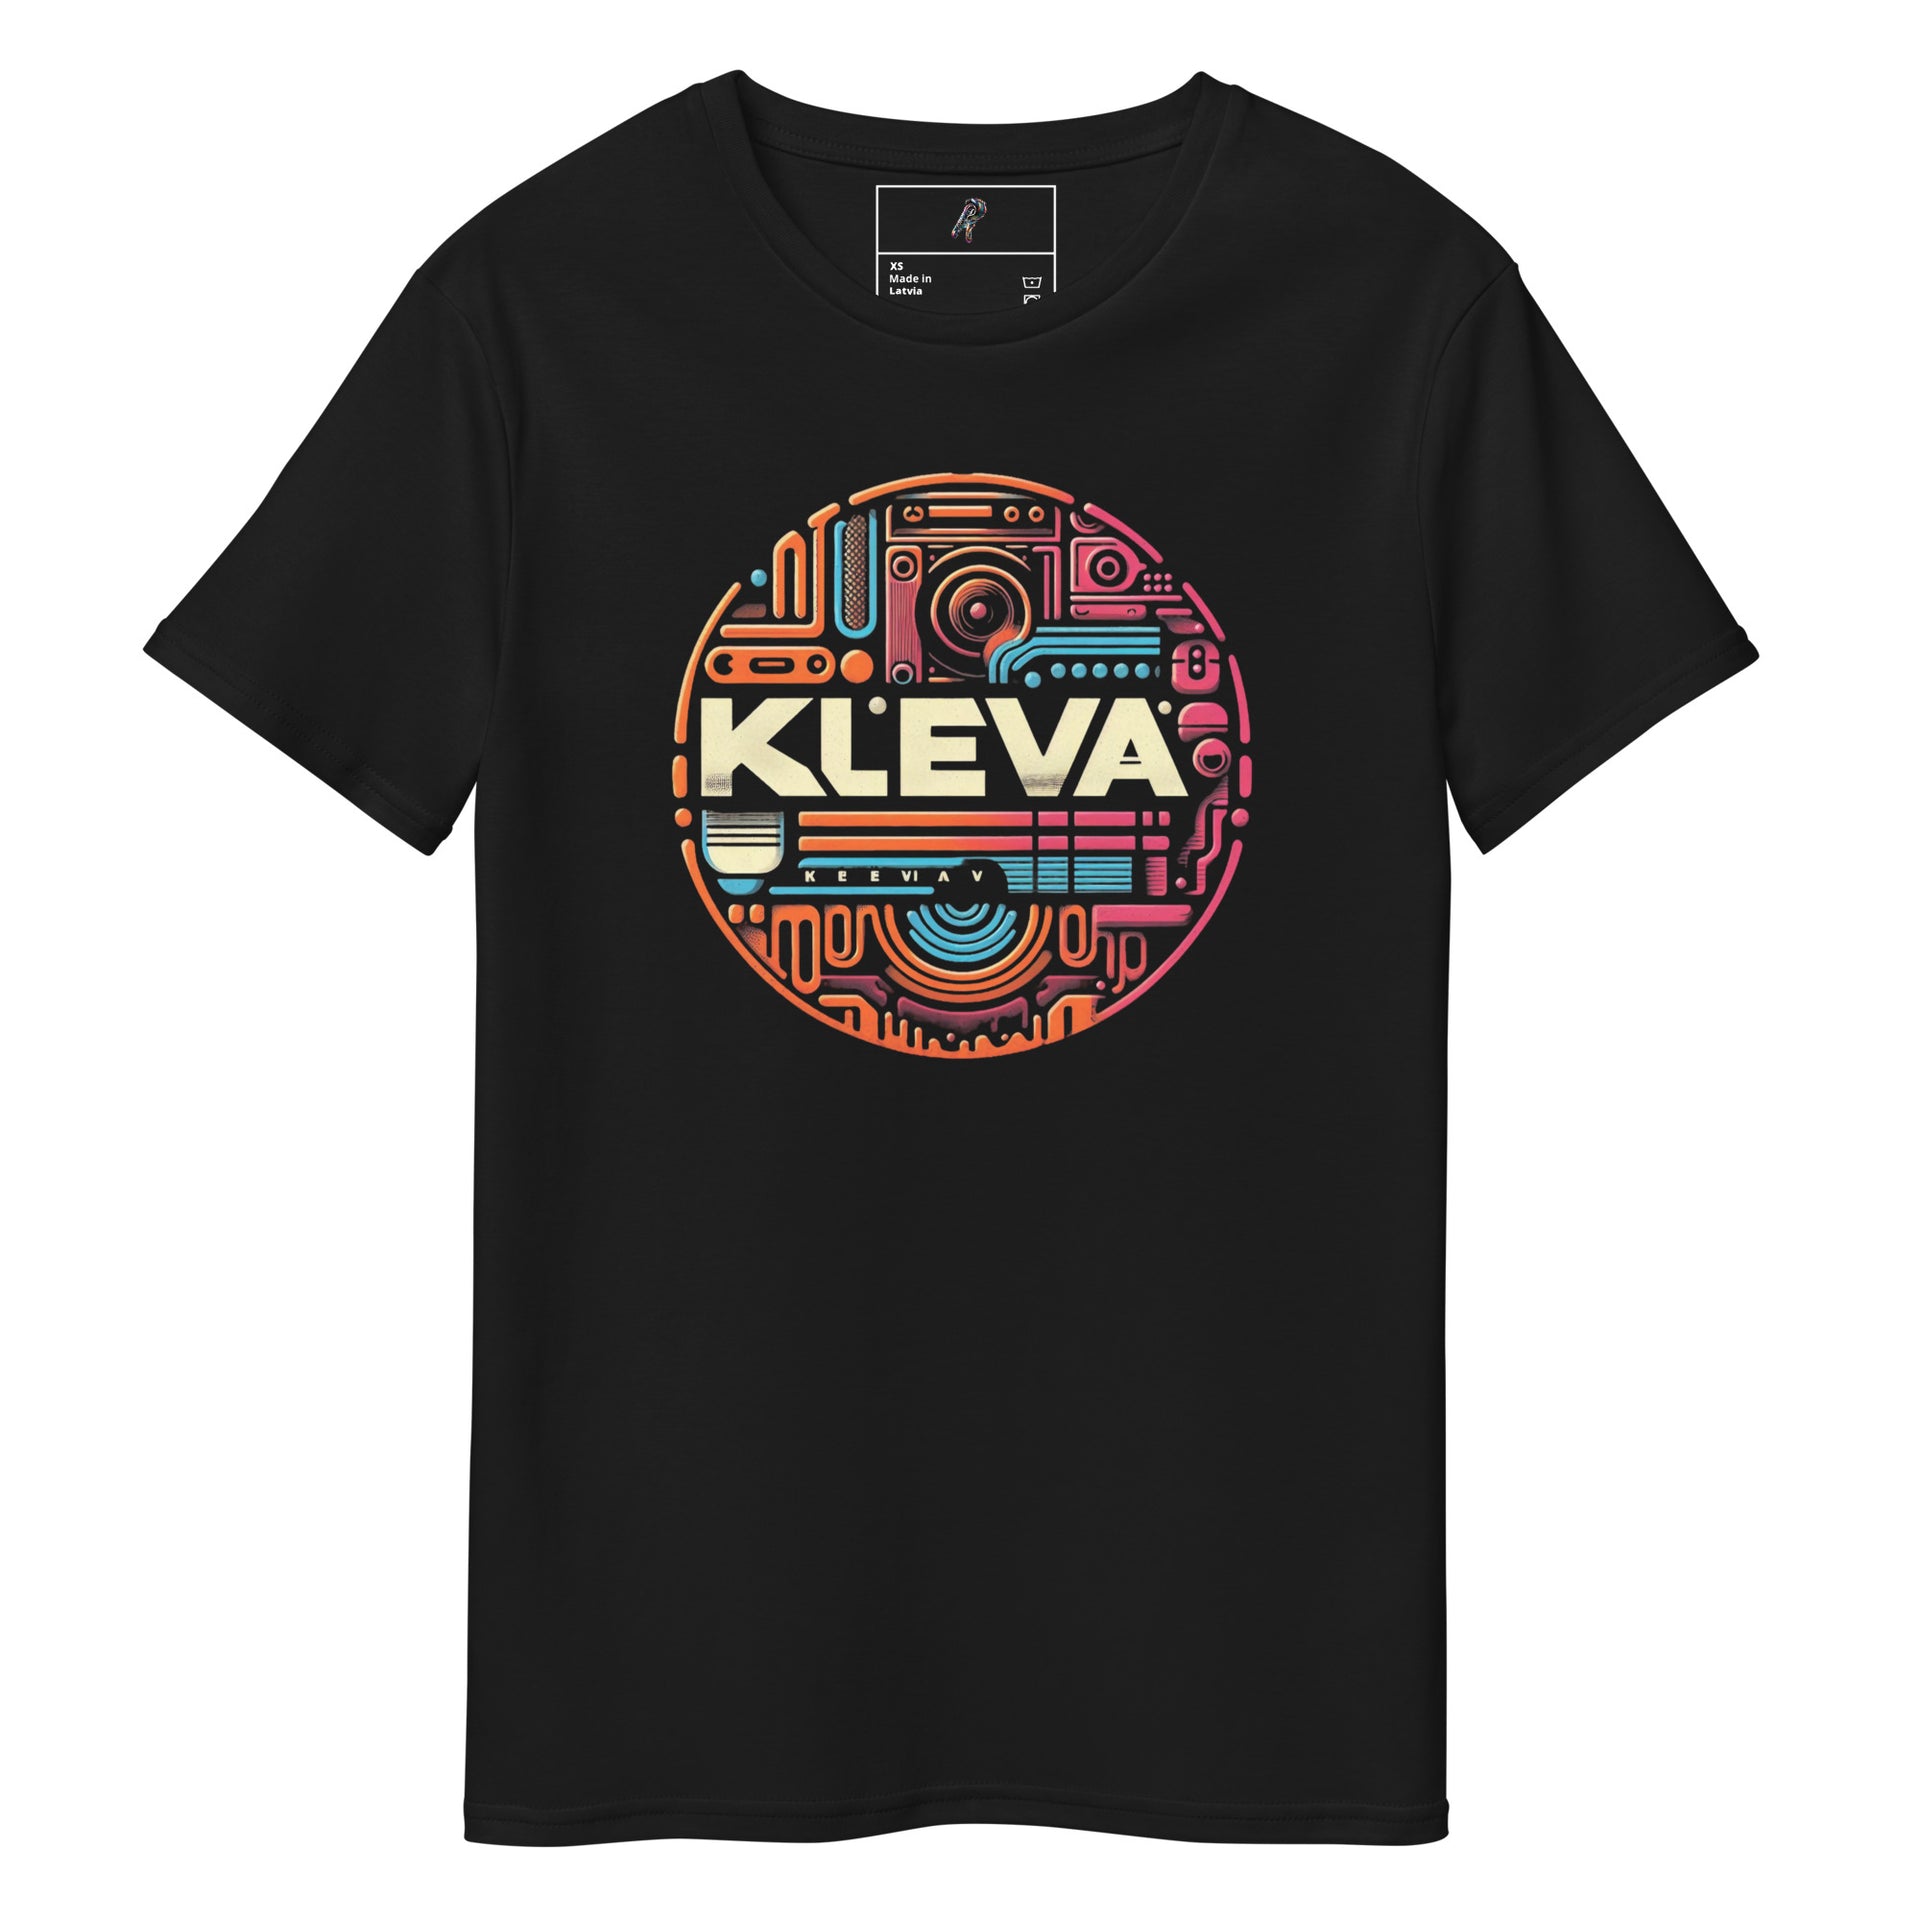 Kleva v2 Men's Premium Cotton T-Shirt